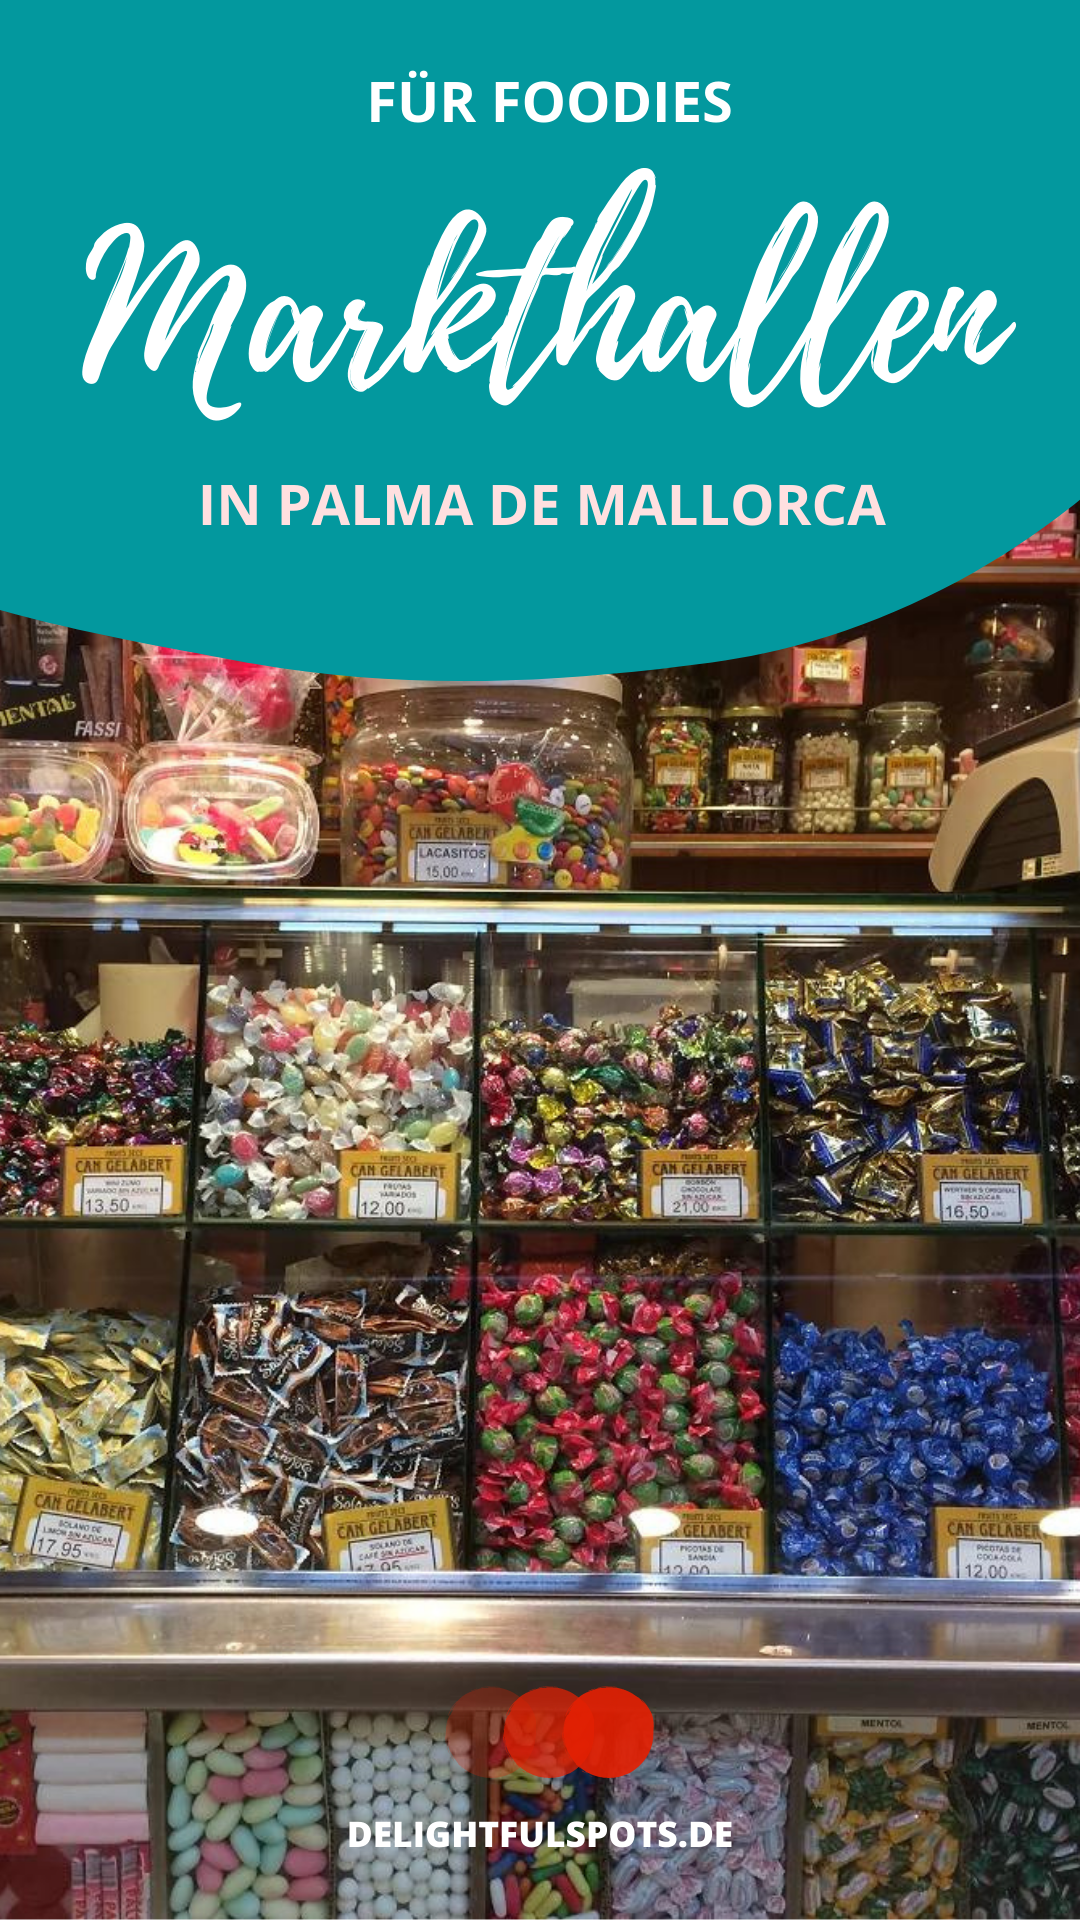 Bezoek de markthallen in Palma de Mallorca